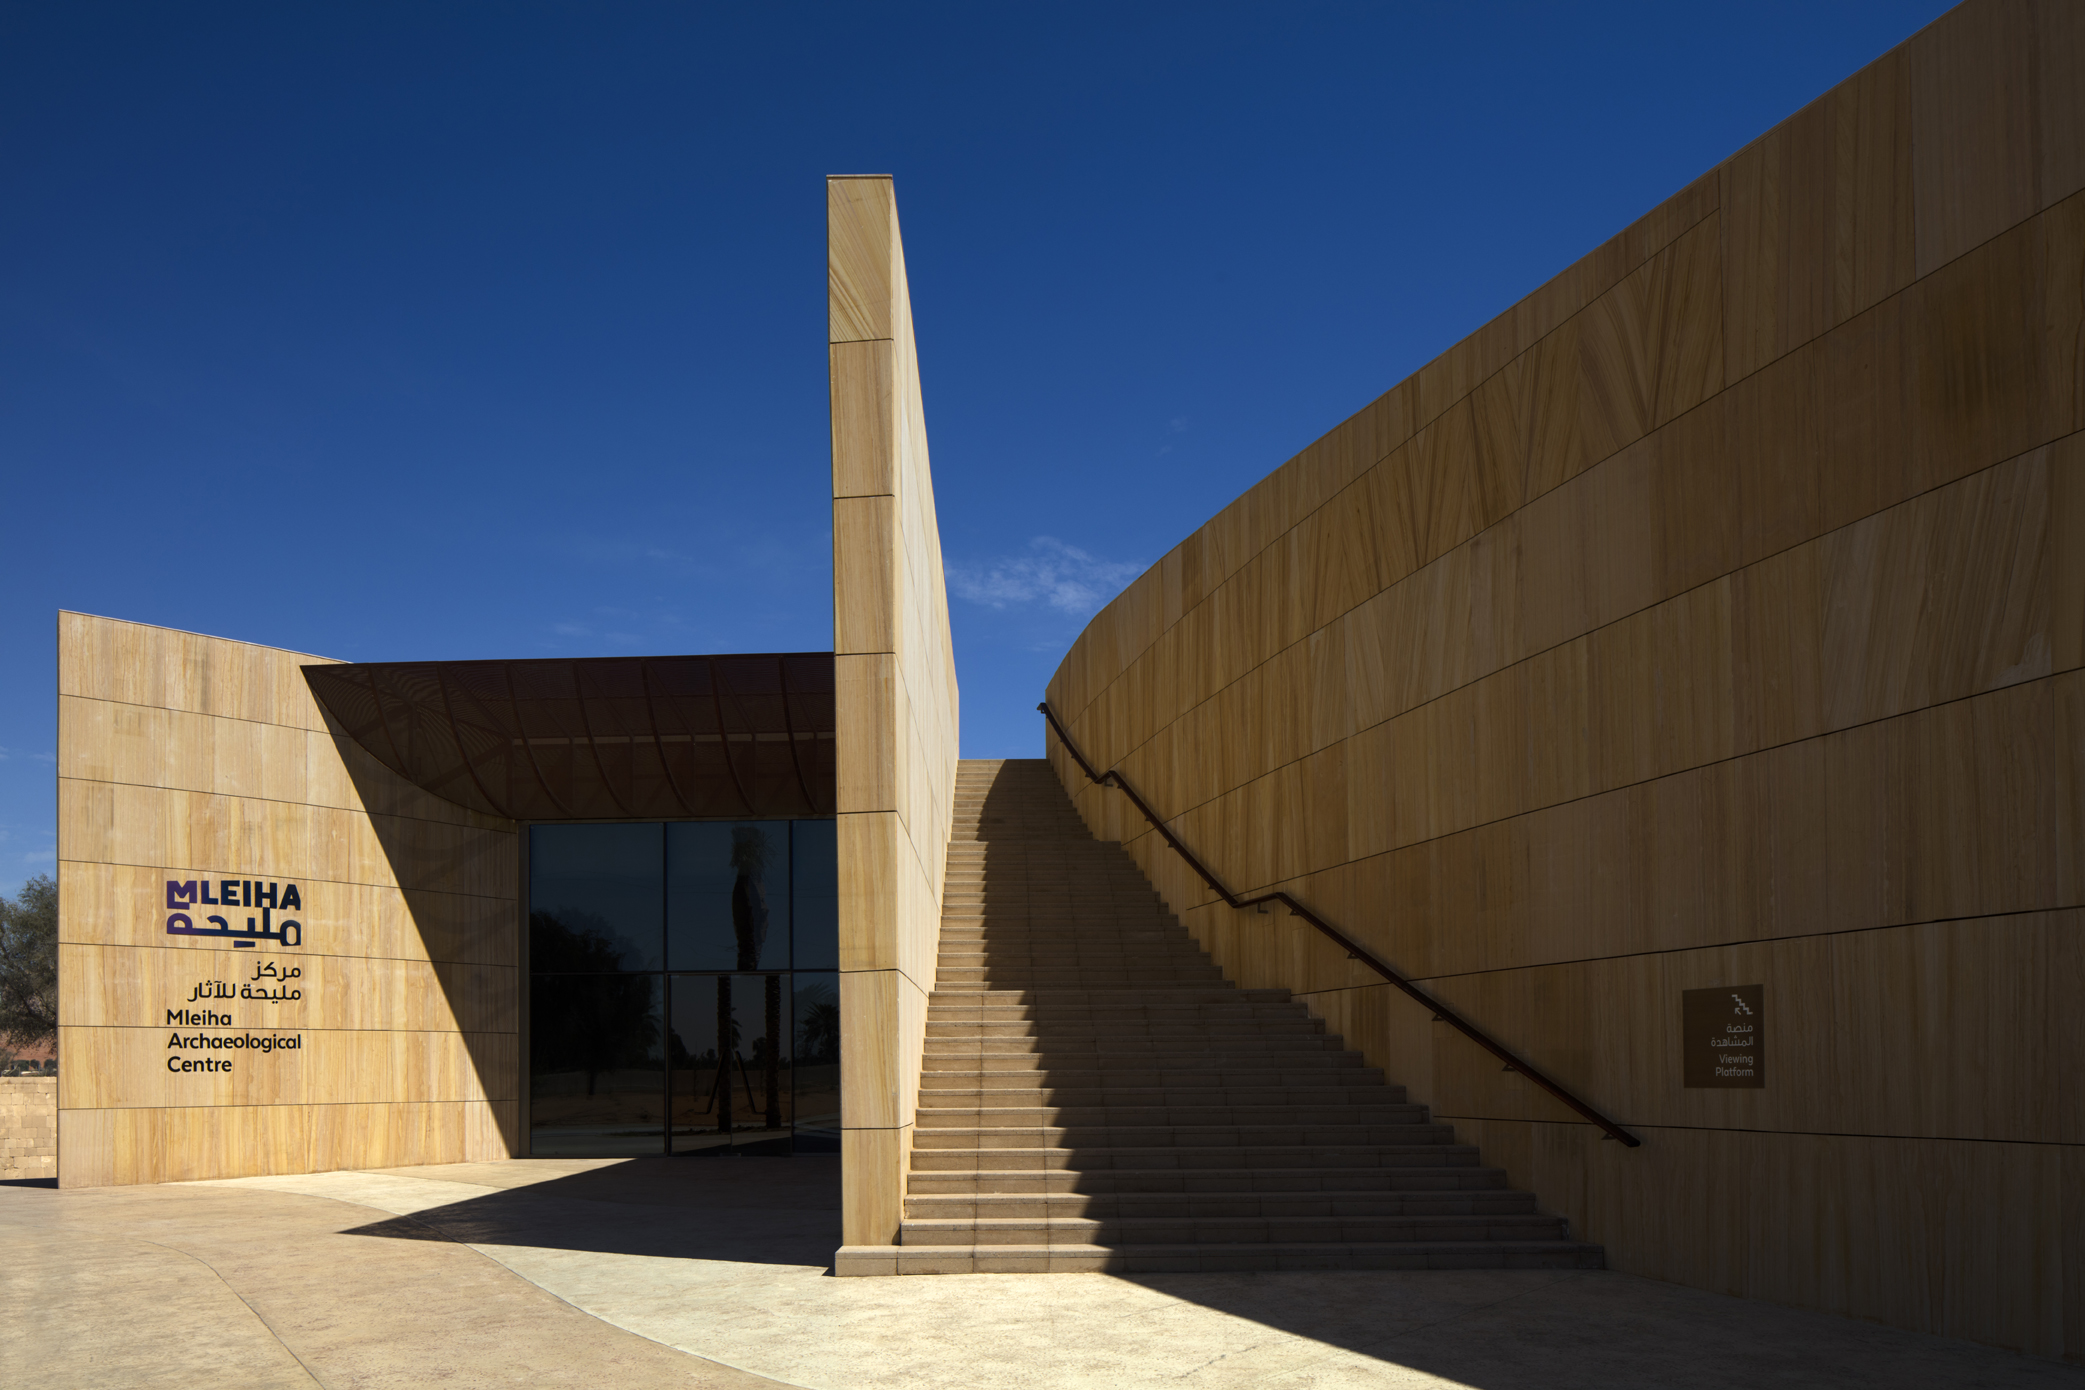 Mleiha Archeological Centre